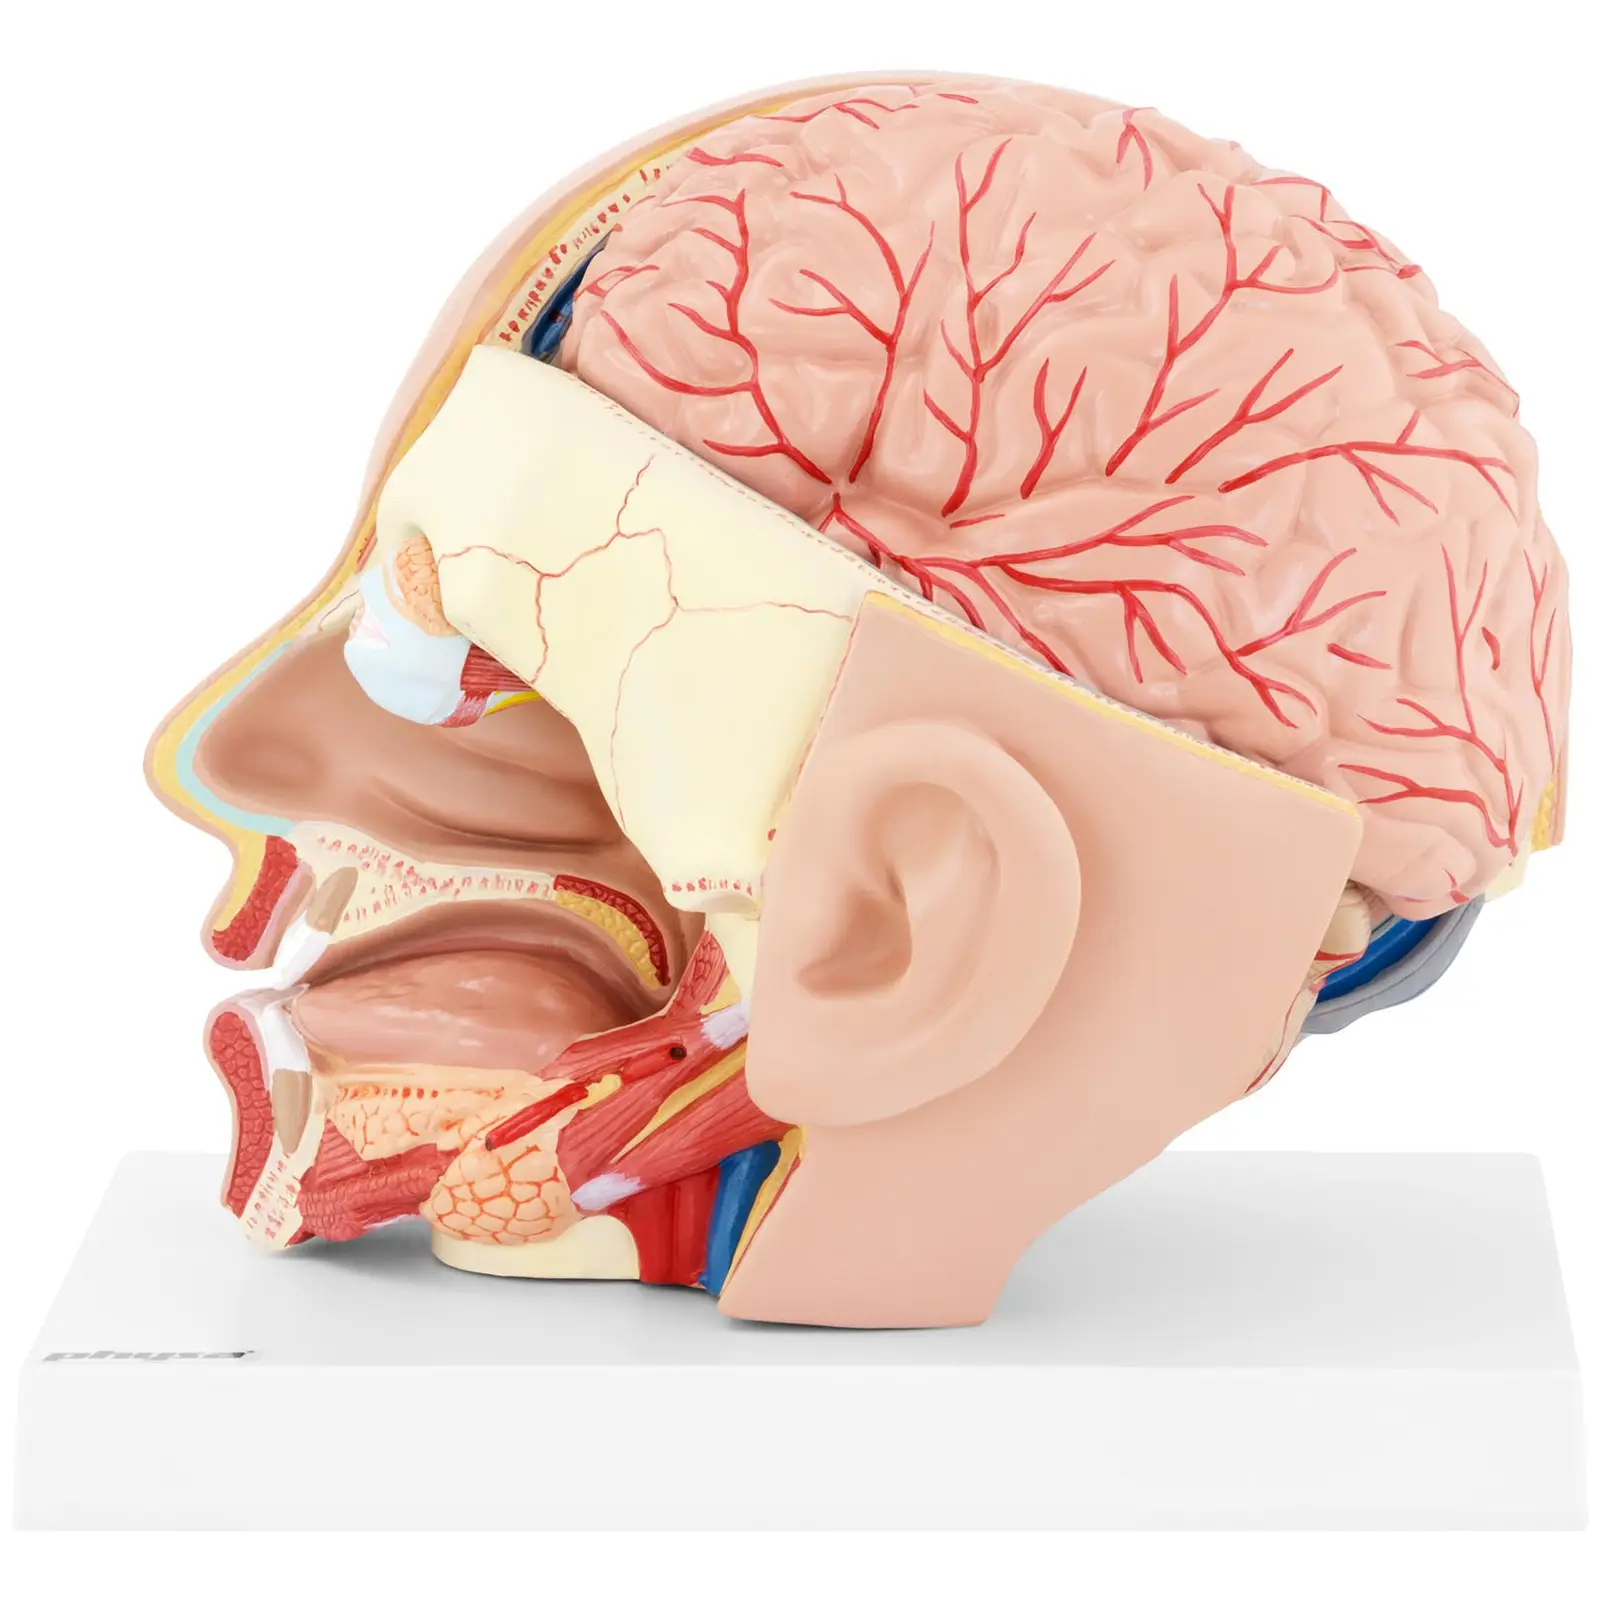 Huvud och hjärna - Anatomisk modell - Kan demonteras i två delar - Originalstorlek